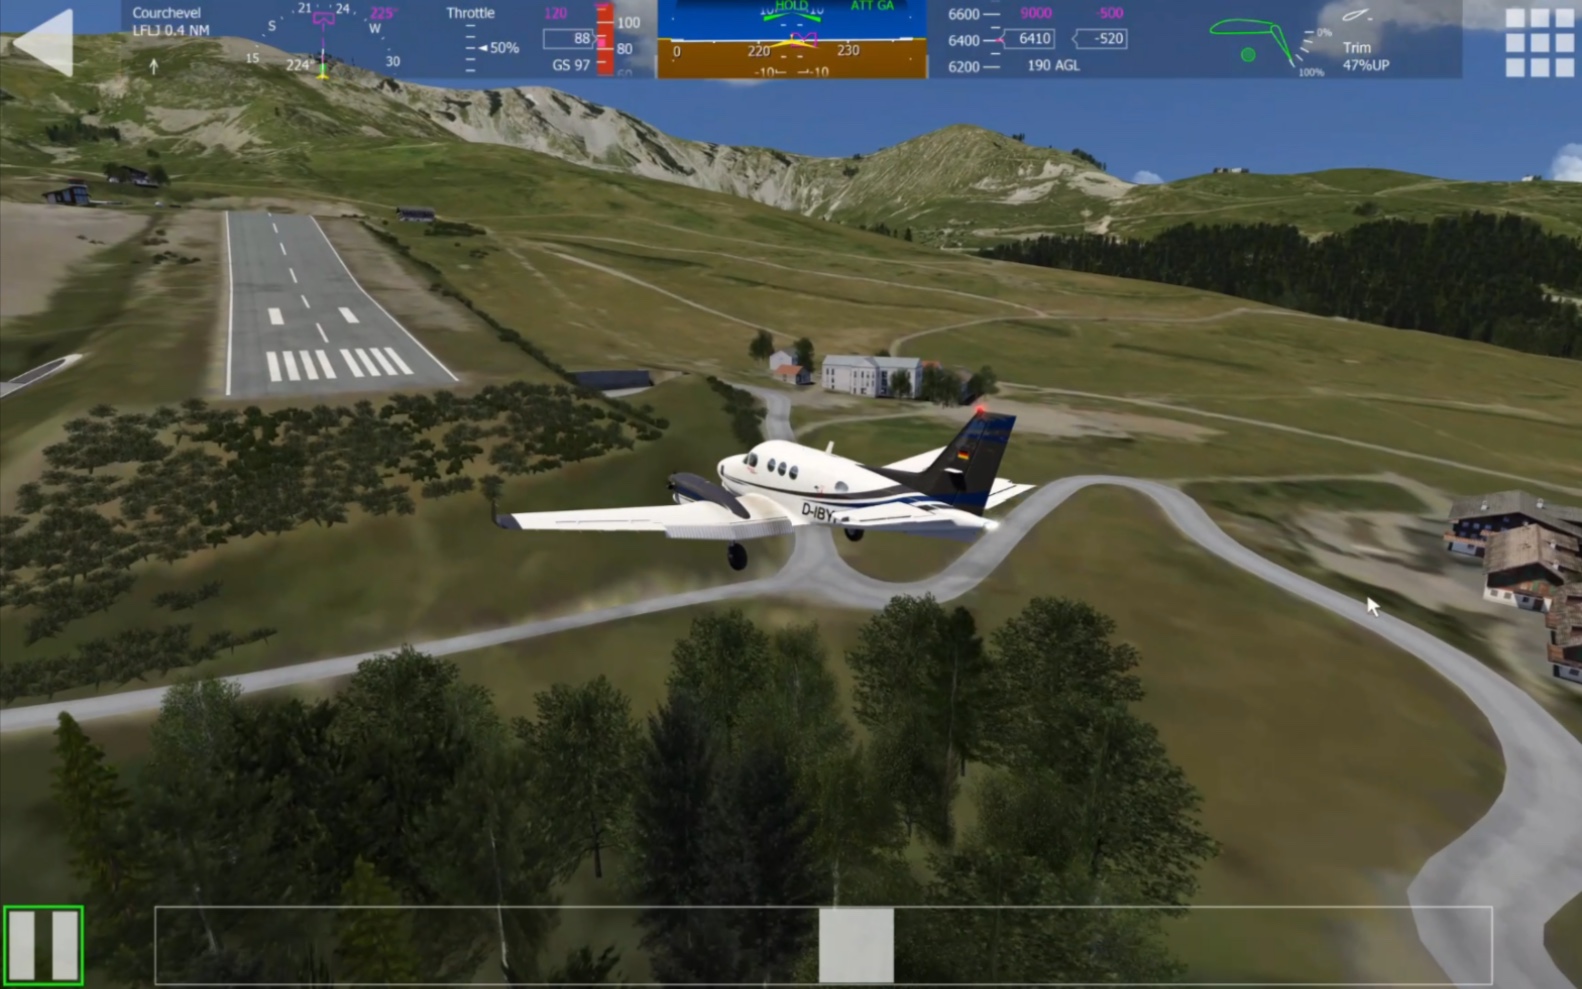 在经历无数次的尝试后终于成功在Aerofly驾驶King Air空中国王降落世界十大危险机场之一的机场—法国高雪维尔机场